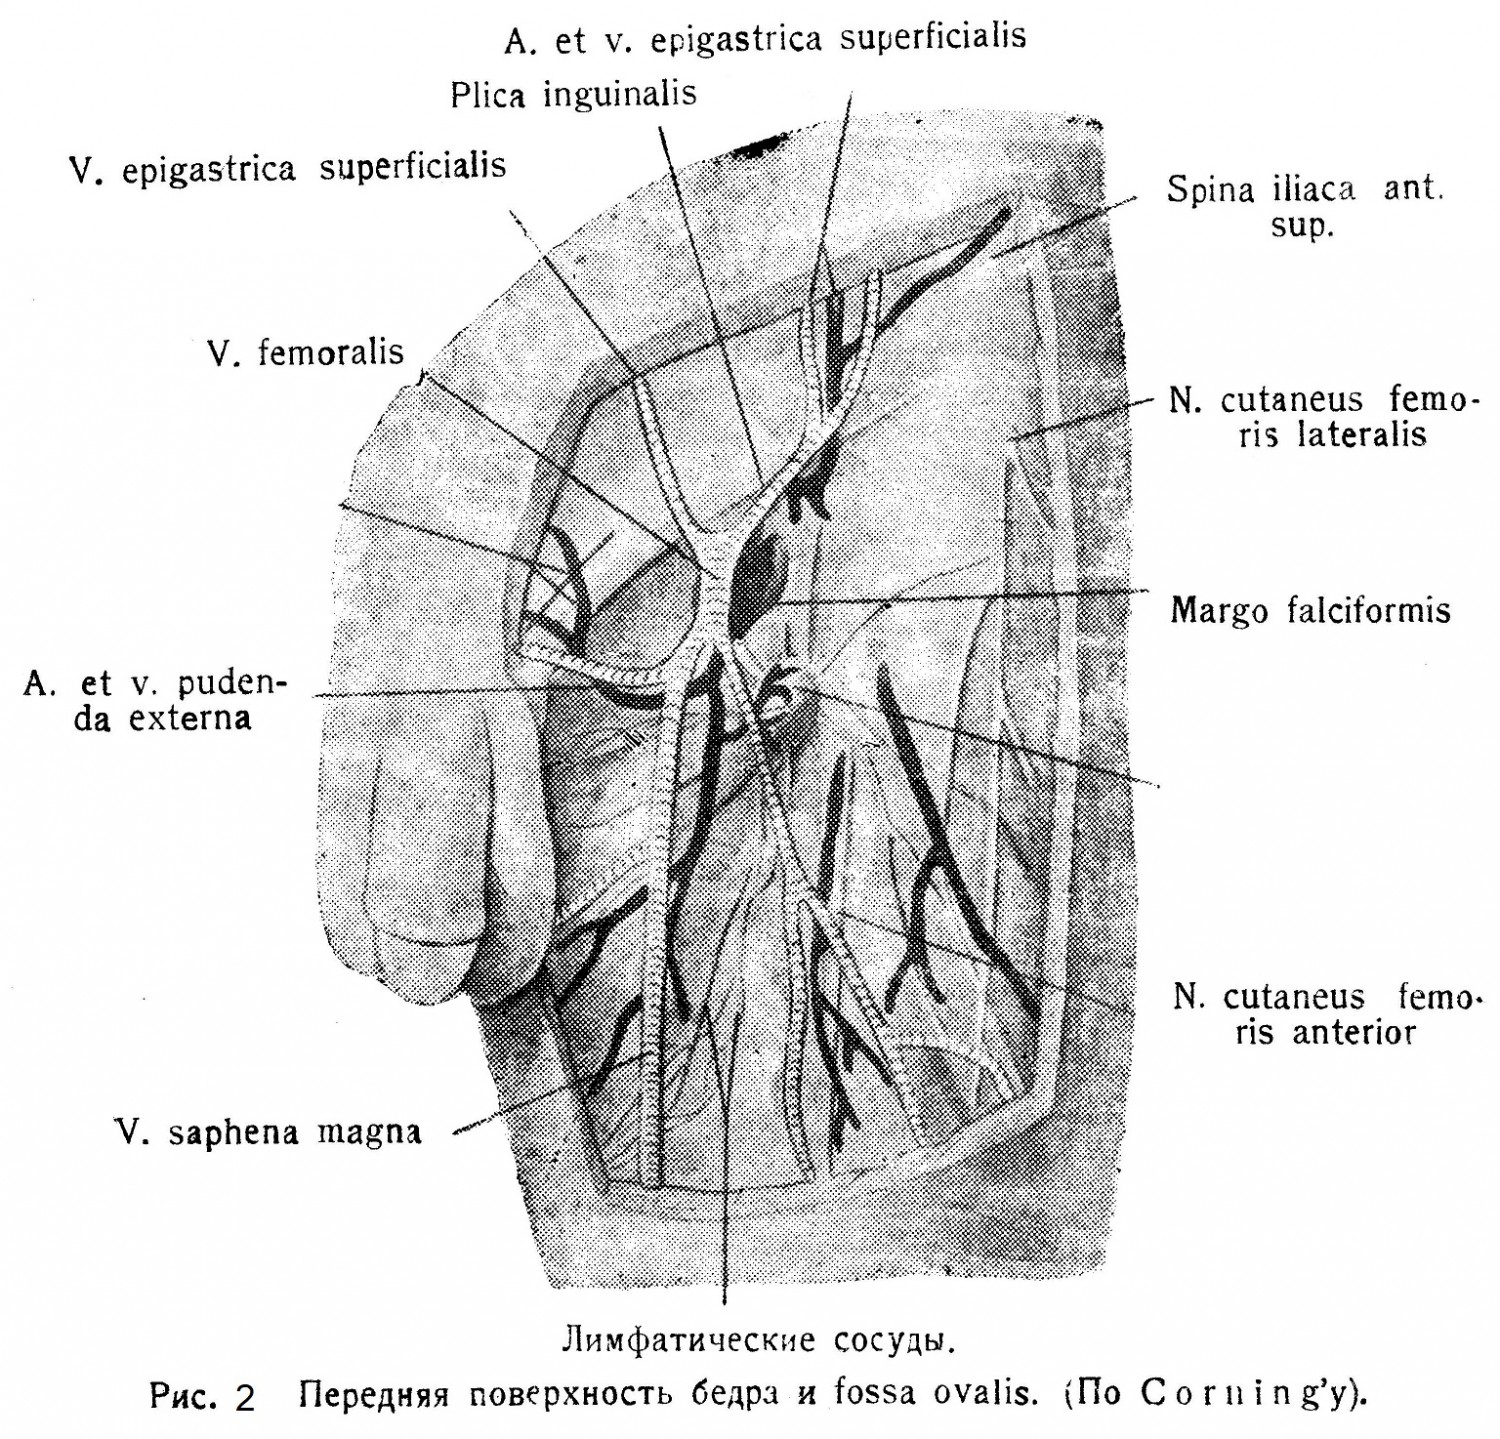 Передняя поверхность бедра и fossa ovalis